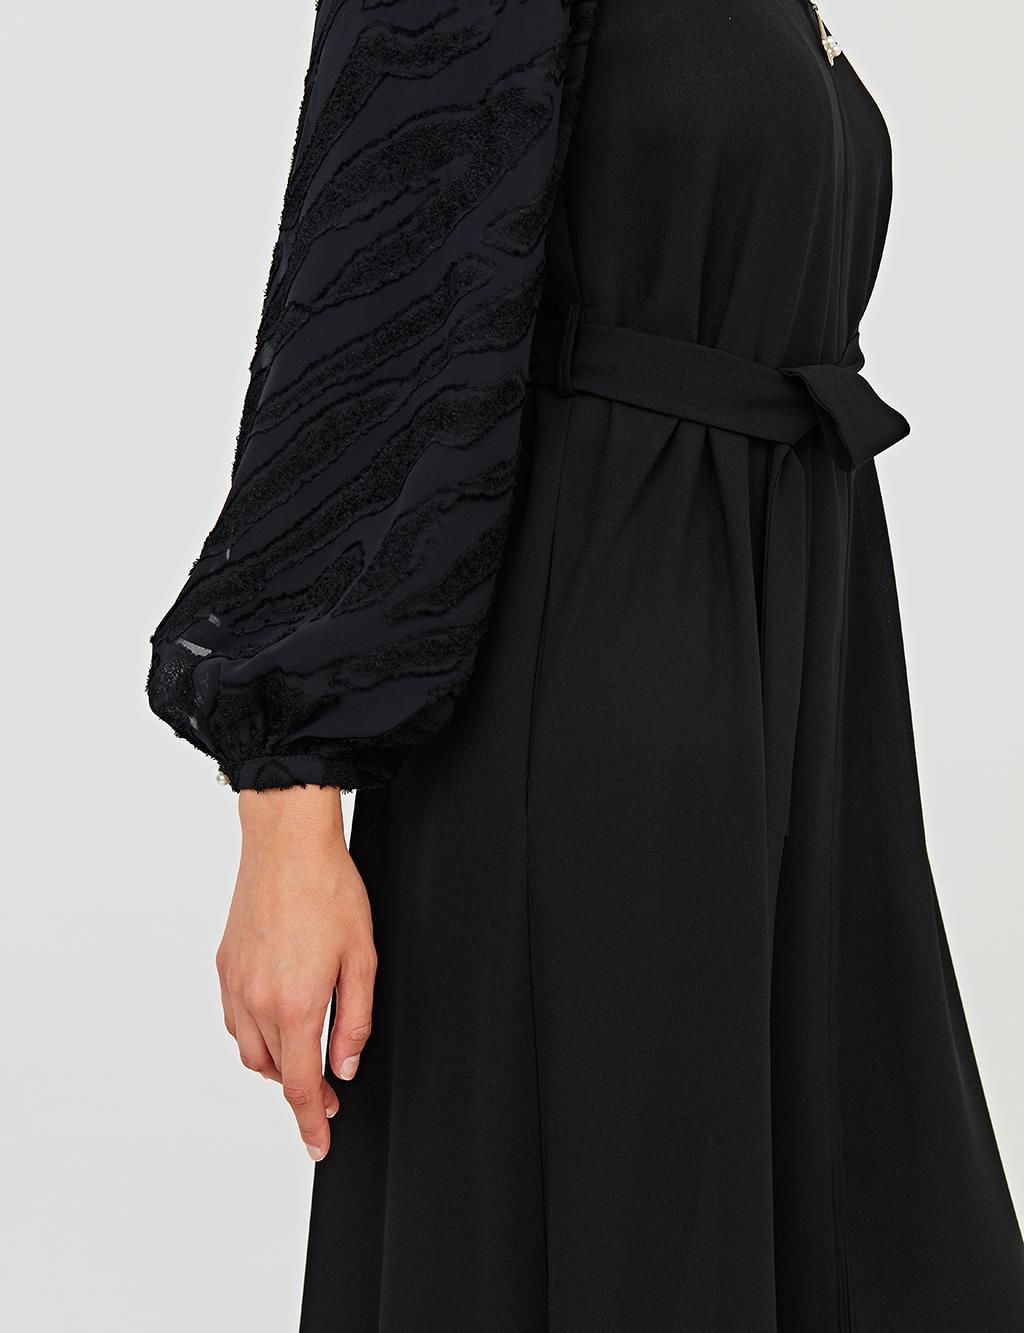 Belted Jacquard Wear & Go B21 25036 Black